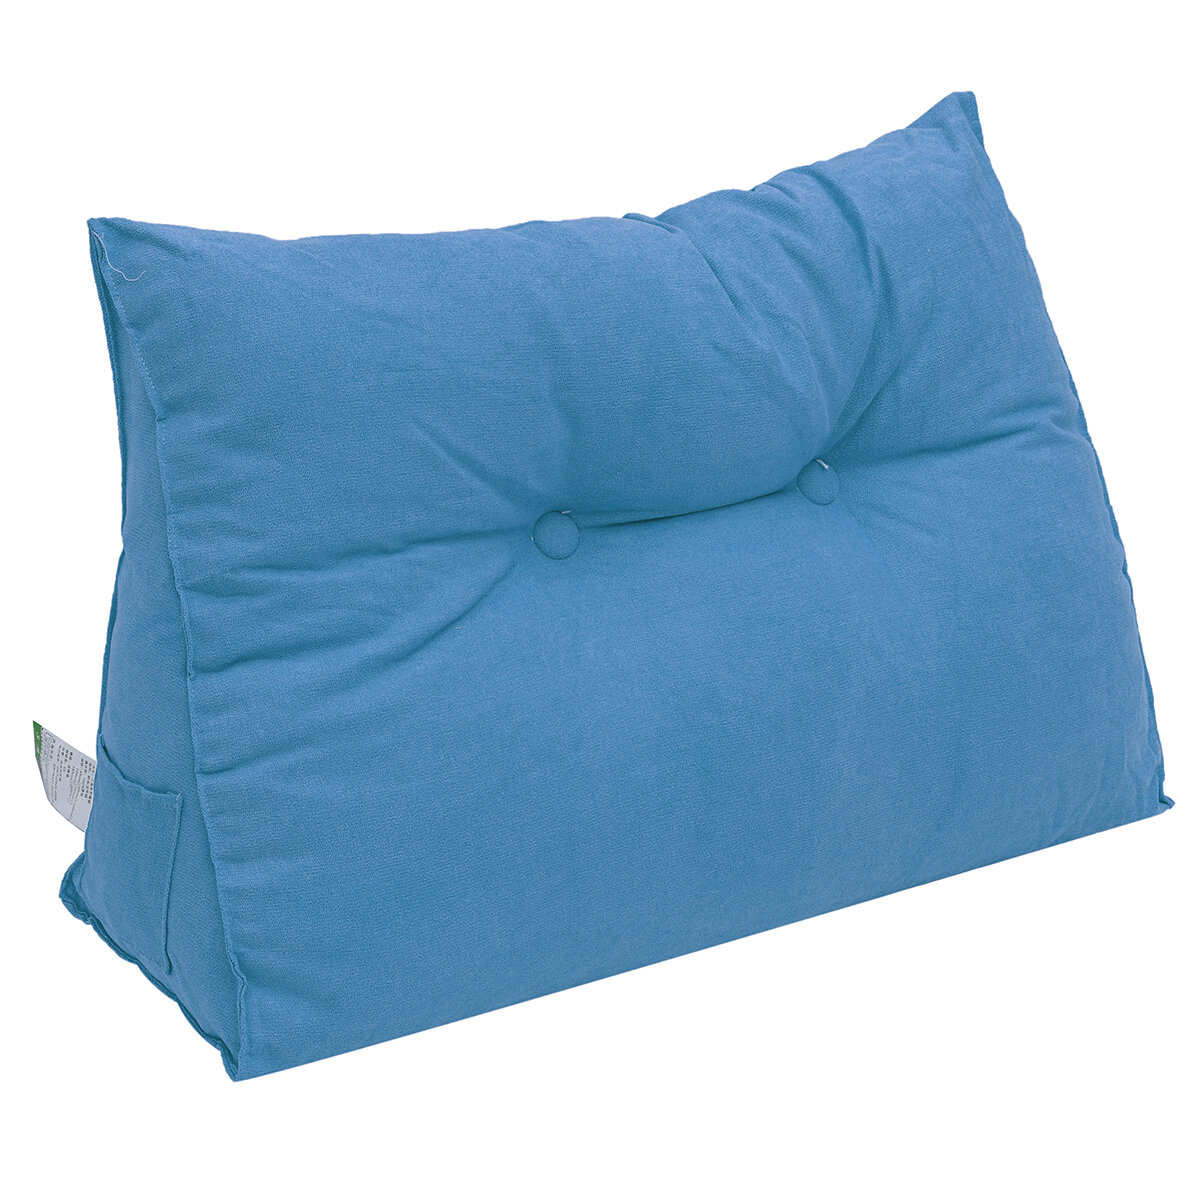 Image of Bedside Sofa Cushion Triangular Big Long Backrest Pillow Large Backrest Soft Bed Headrest